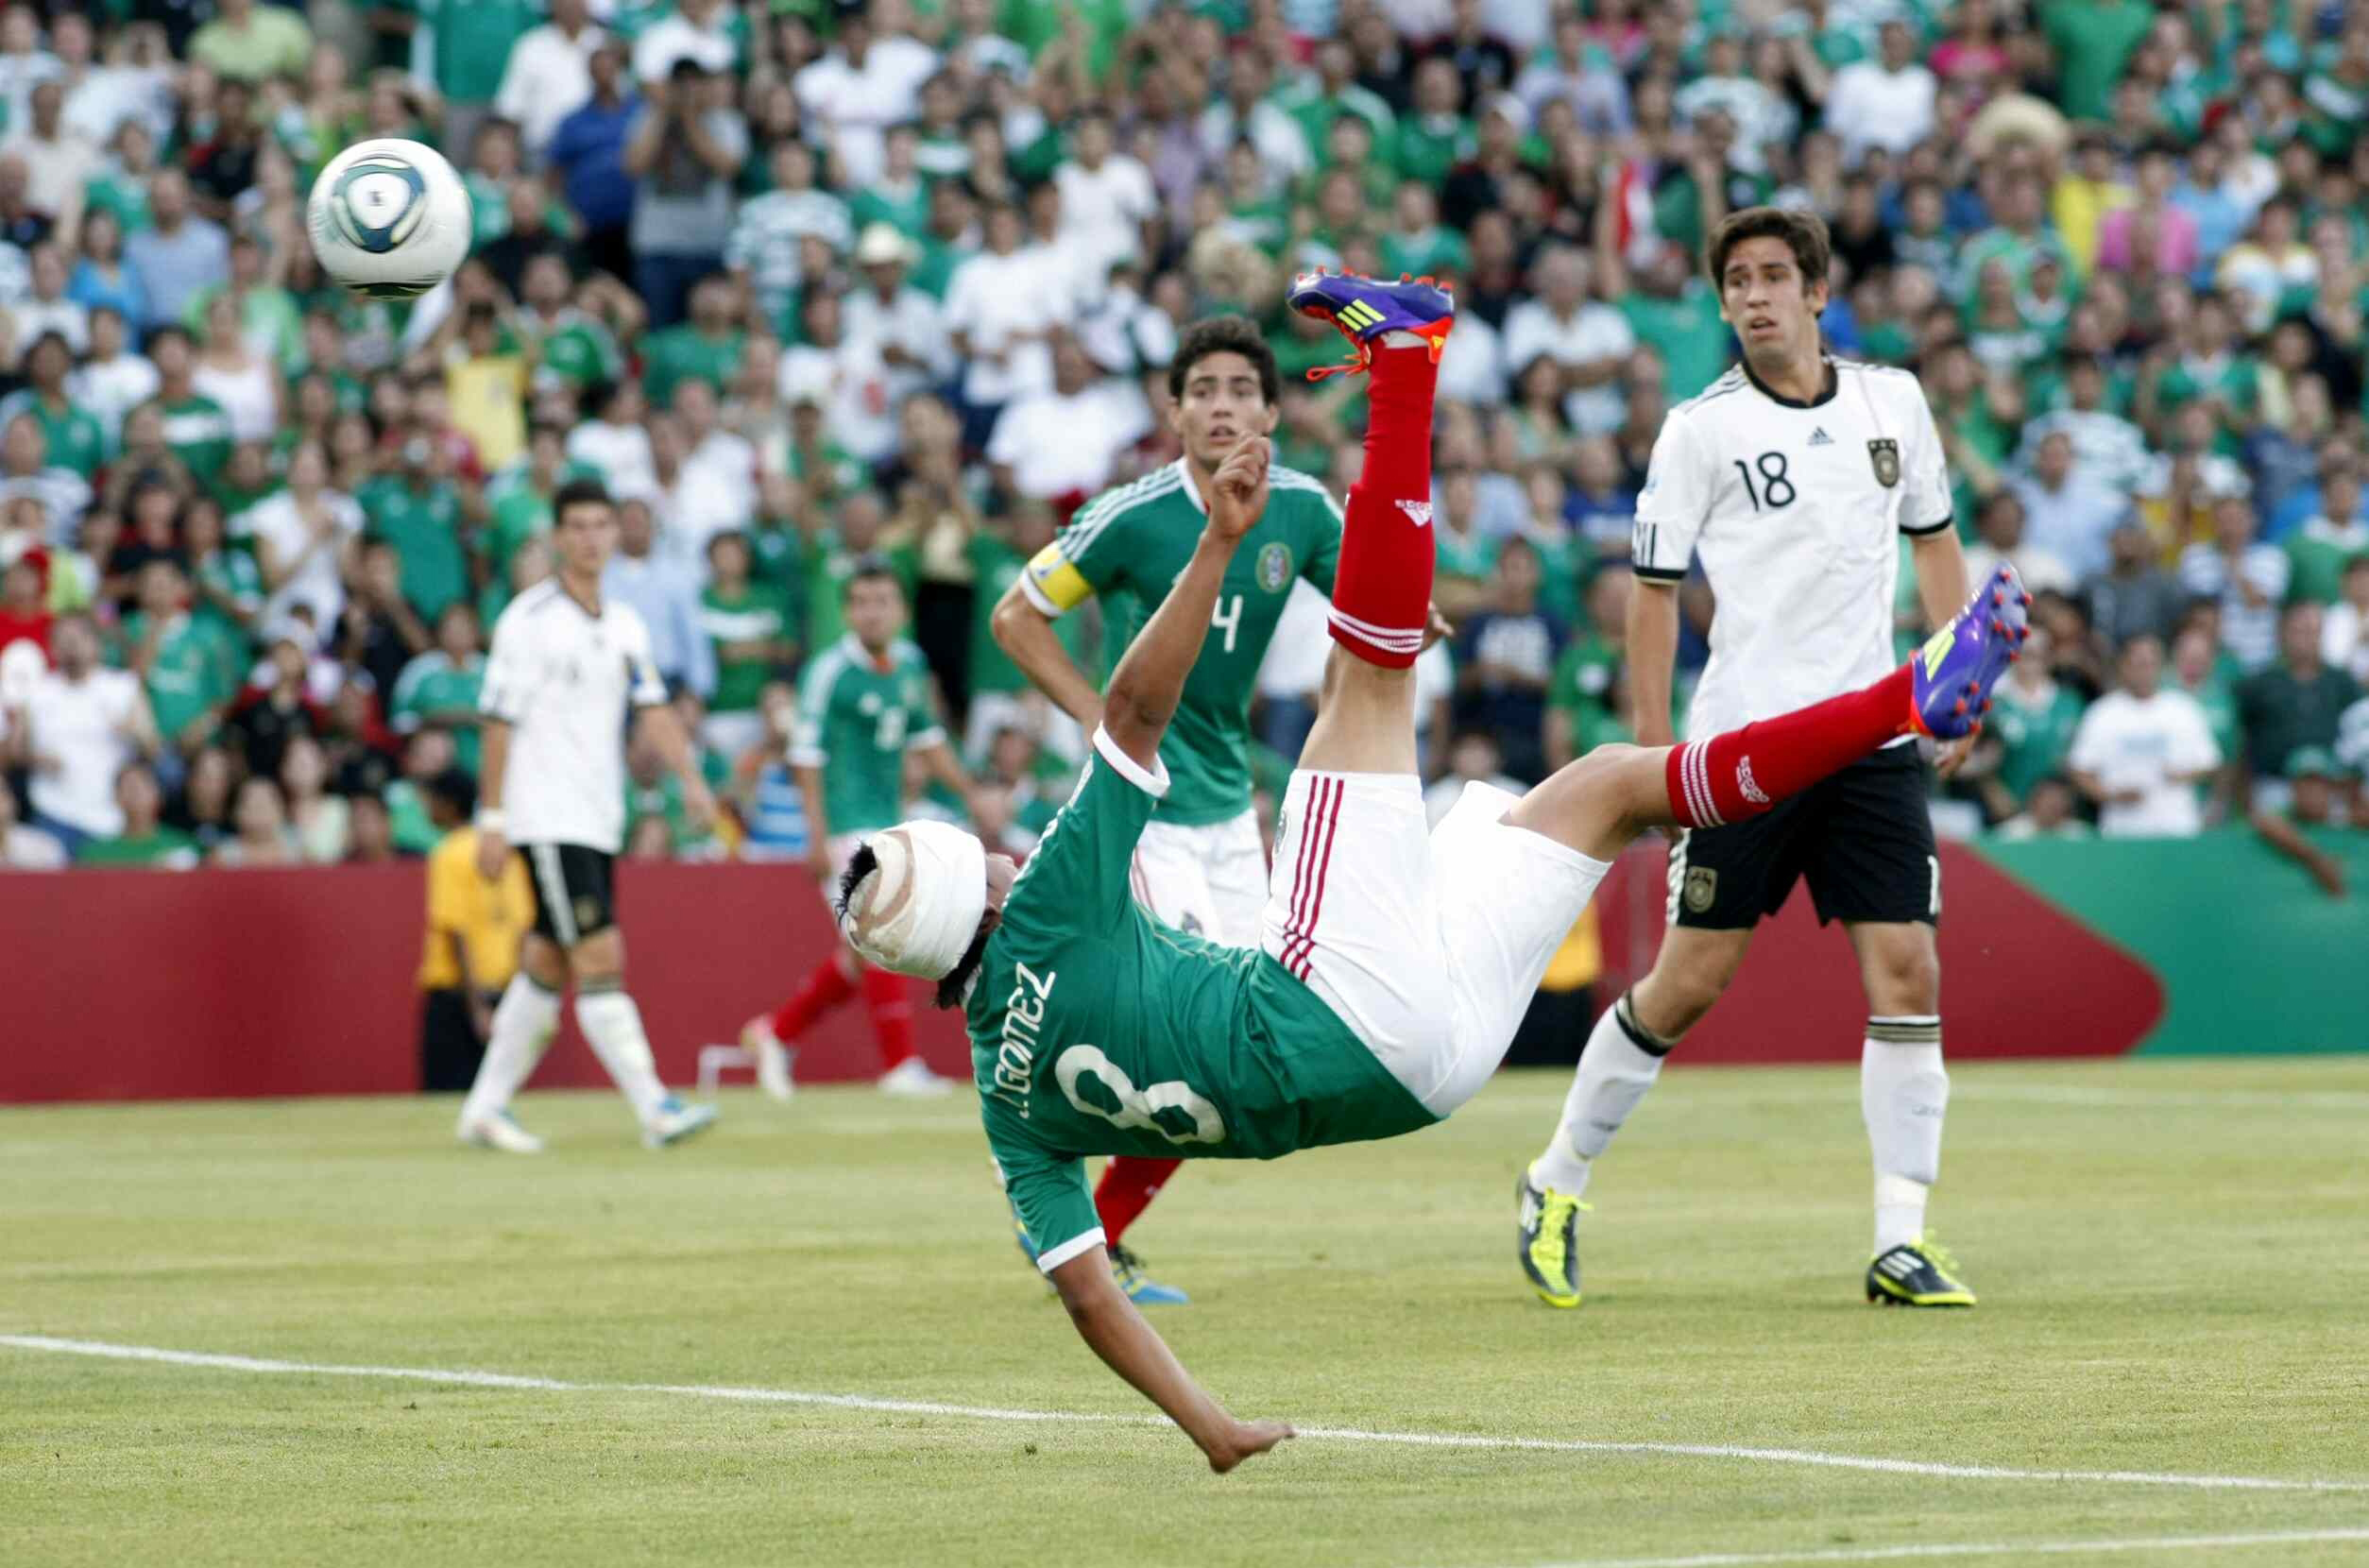 Julio 'La Momia' Gómez anotó un golazo de bandera en 2011 para clasificar al mini tri a la final del mundo sub 17.